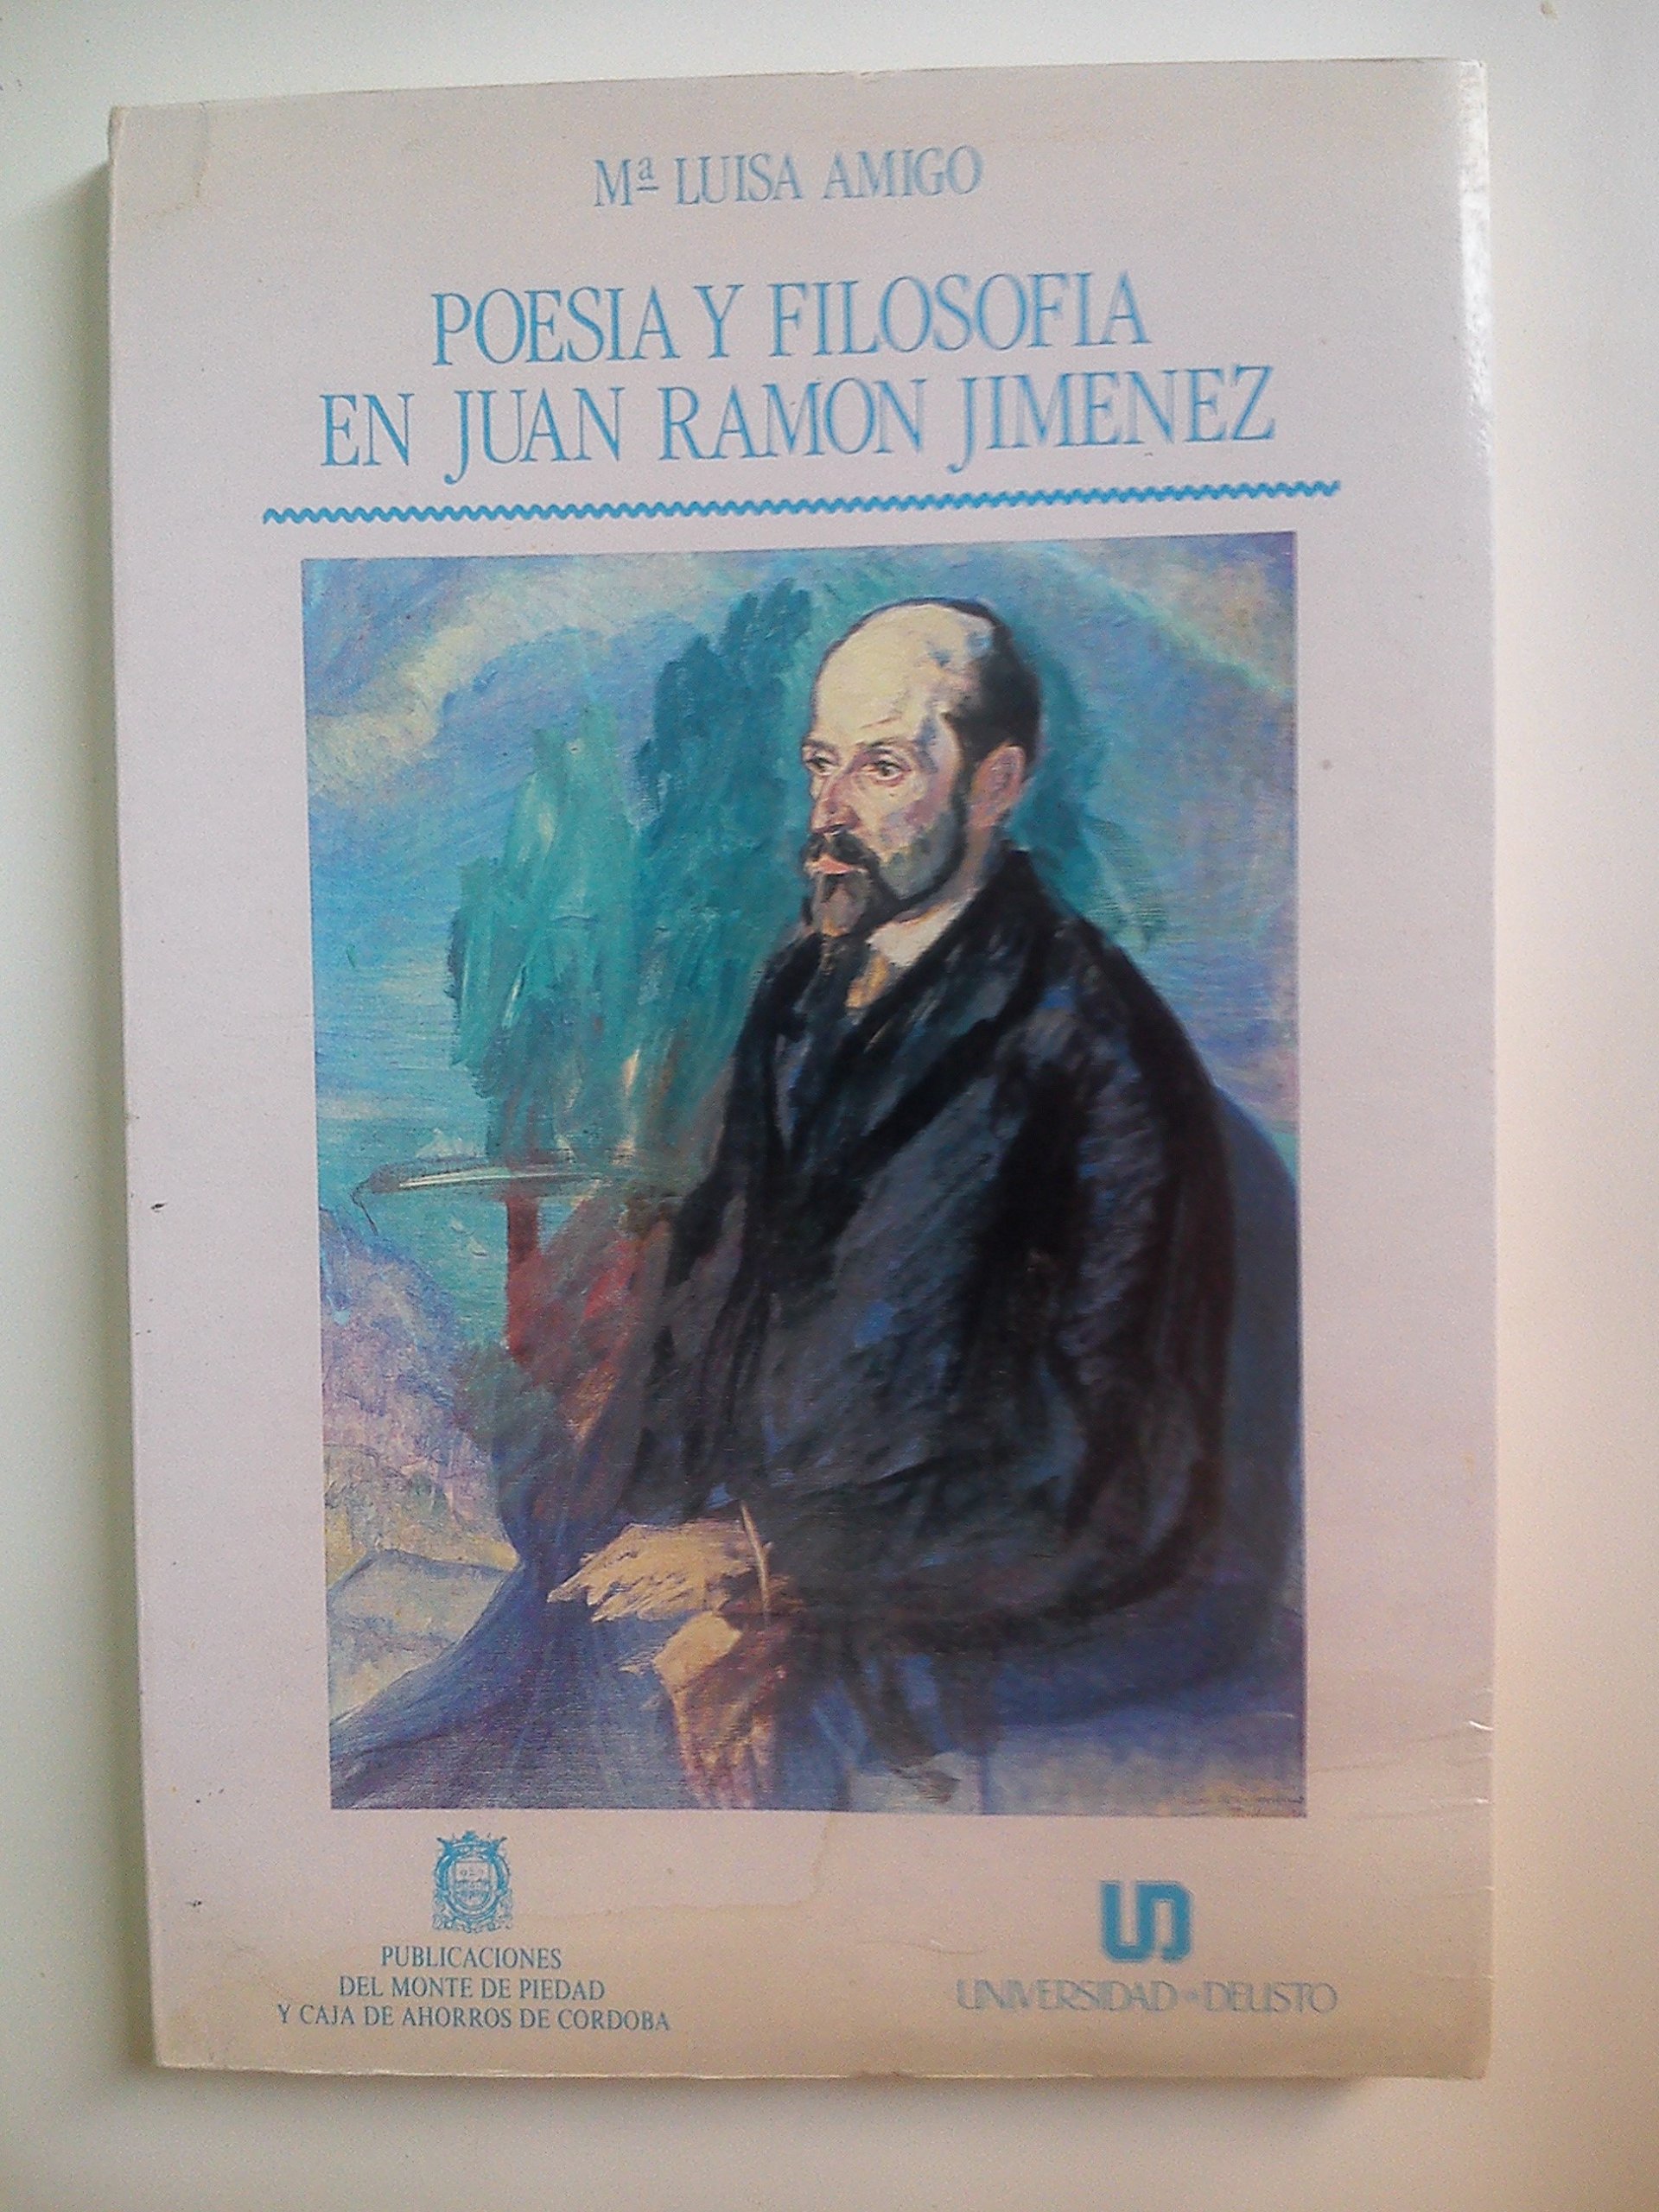 Imagen de portada del libro Poesía y filosofía en Juan Ramón Jiménez